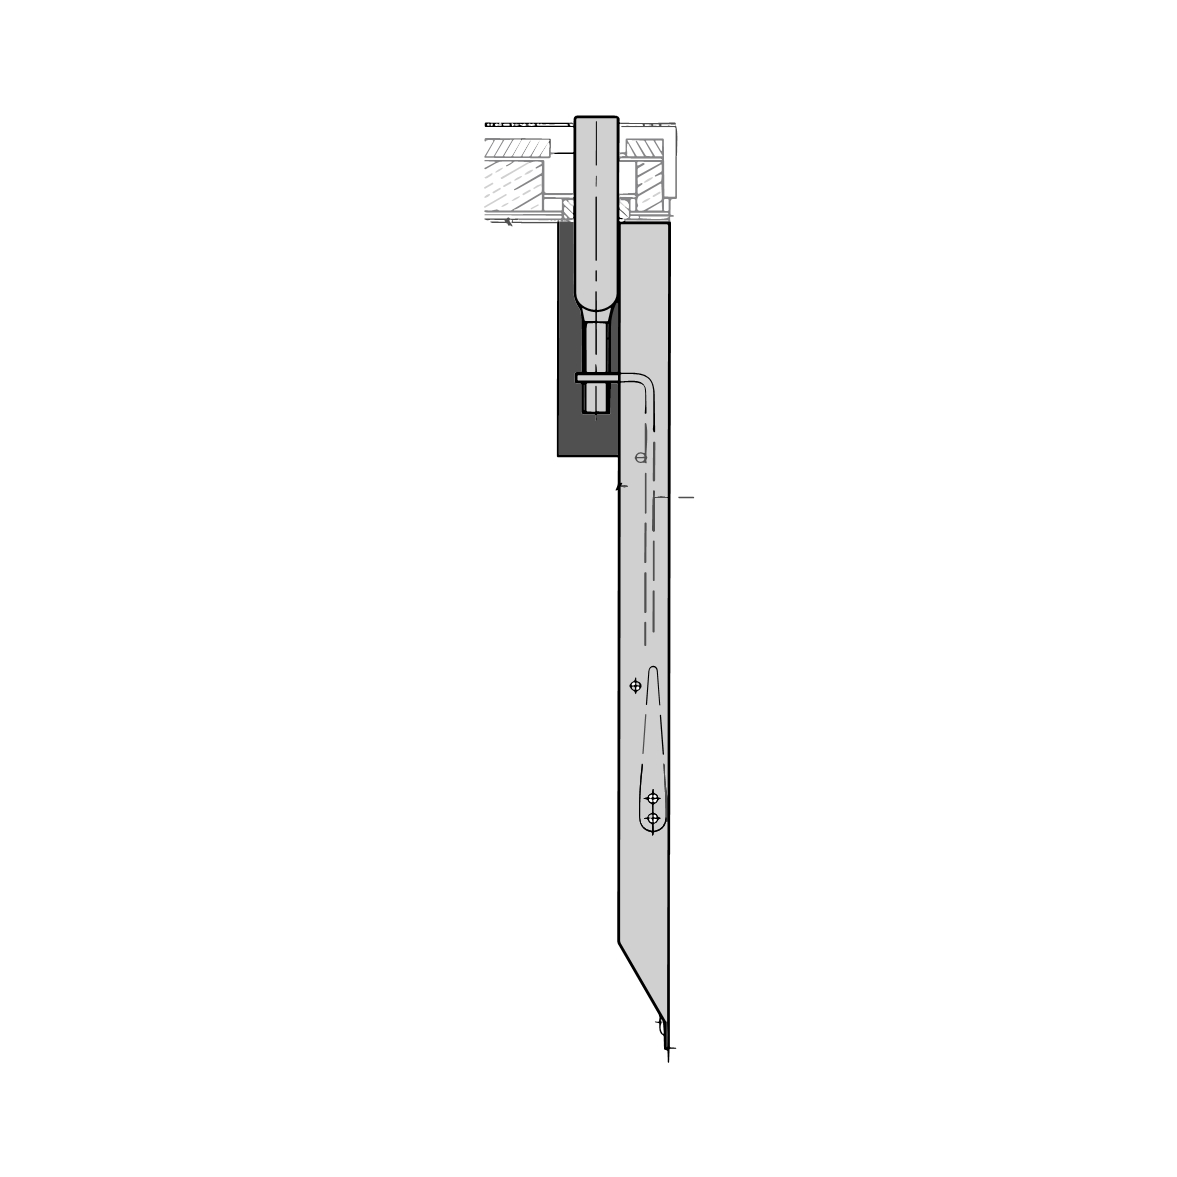 Kantenriegel für Türen | Länge: 18 mm  | Ausführung: oben